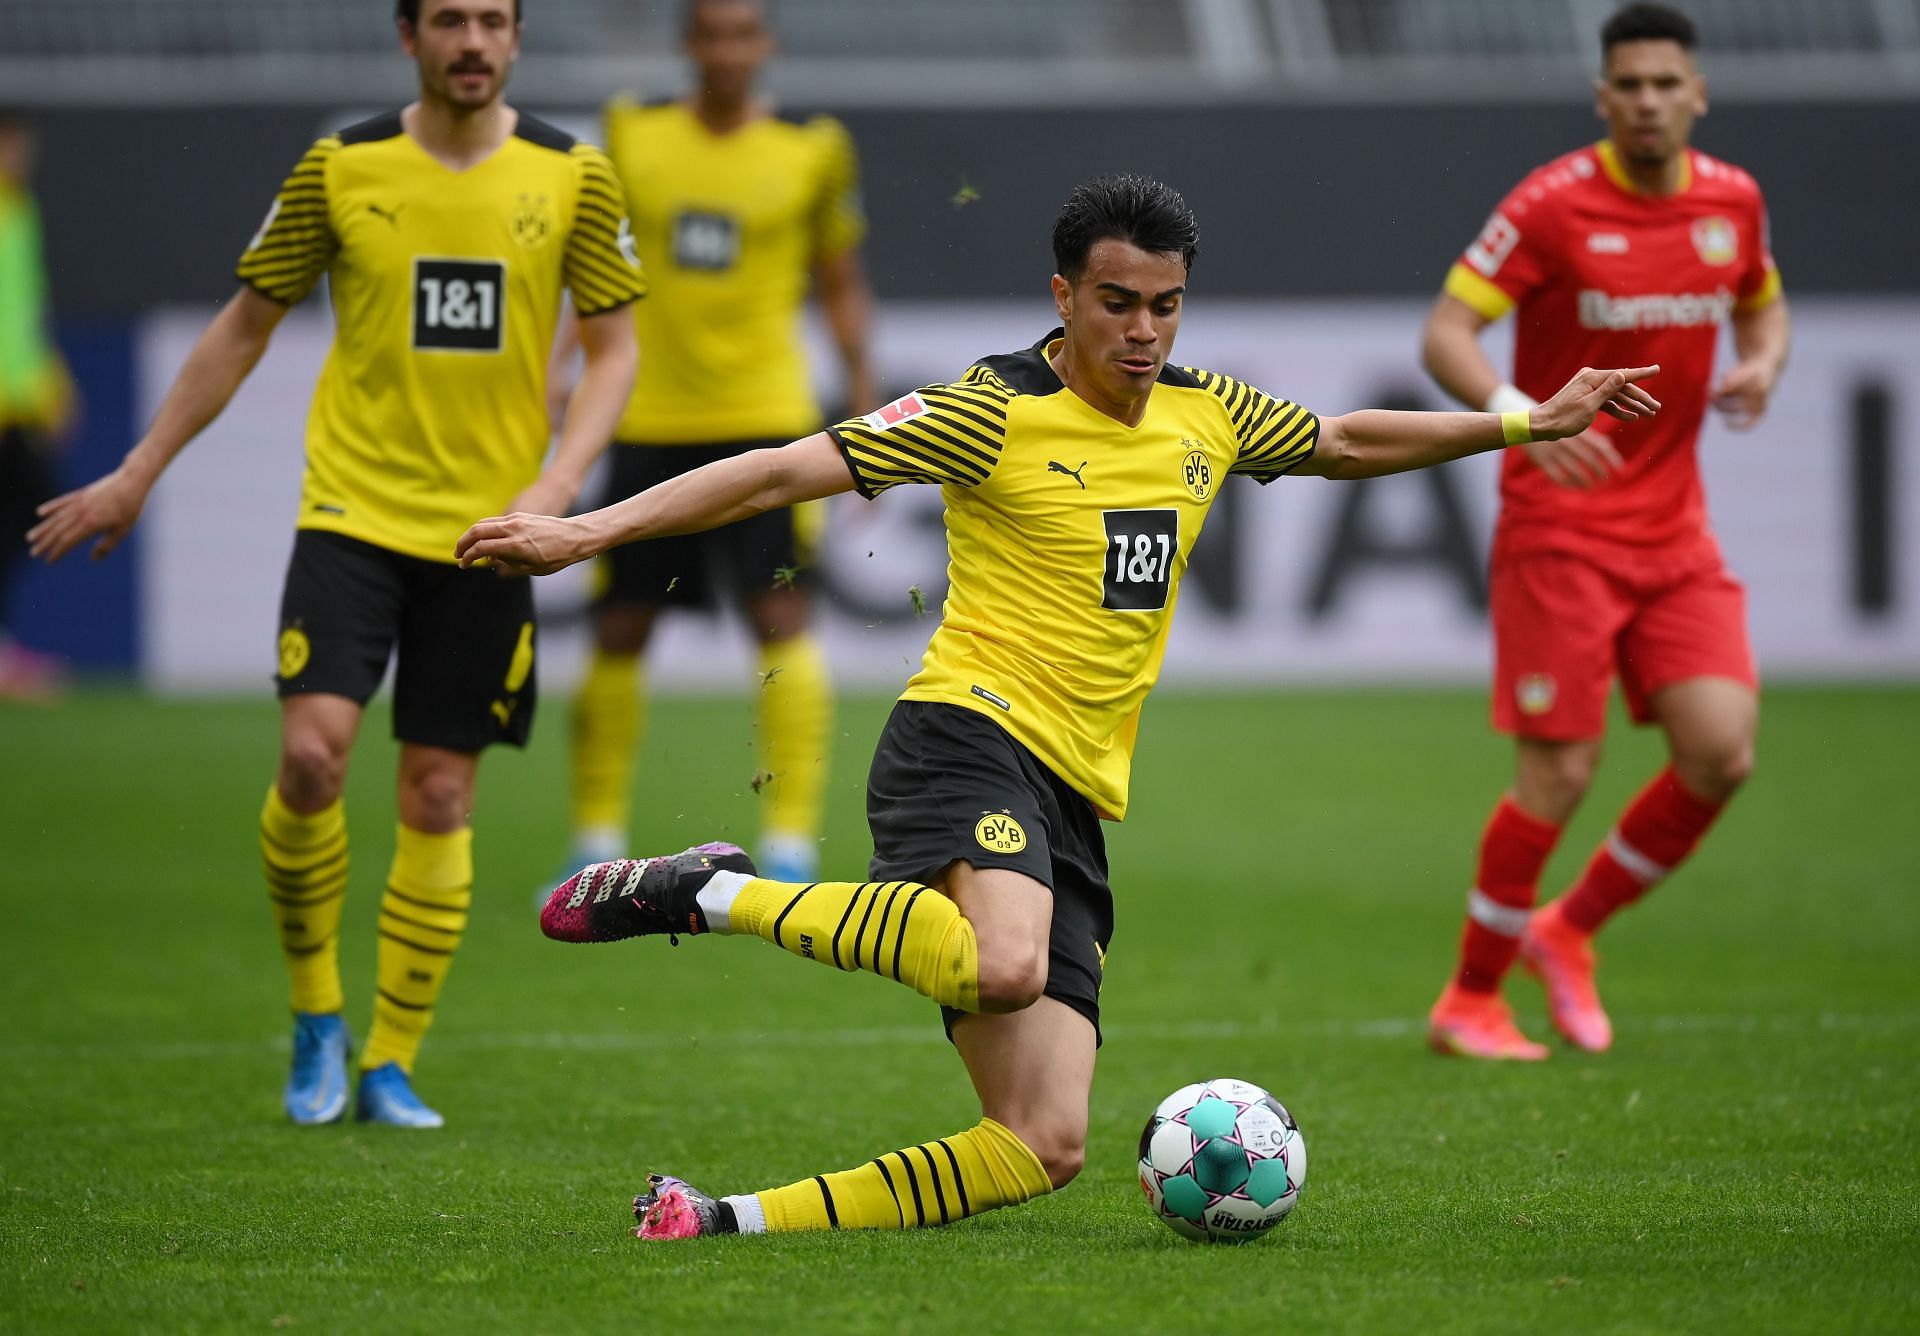 Reinier failed to make an impact at Dortmund